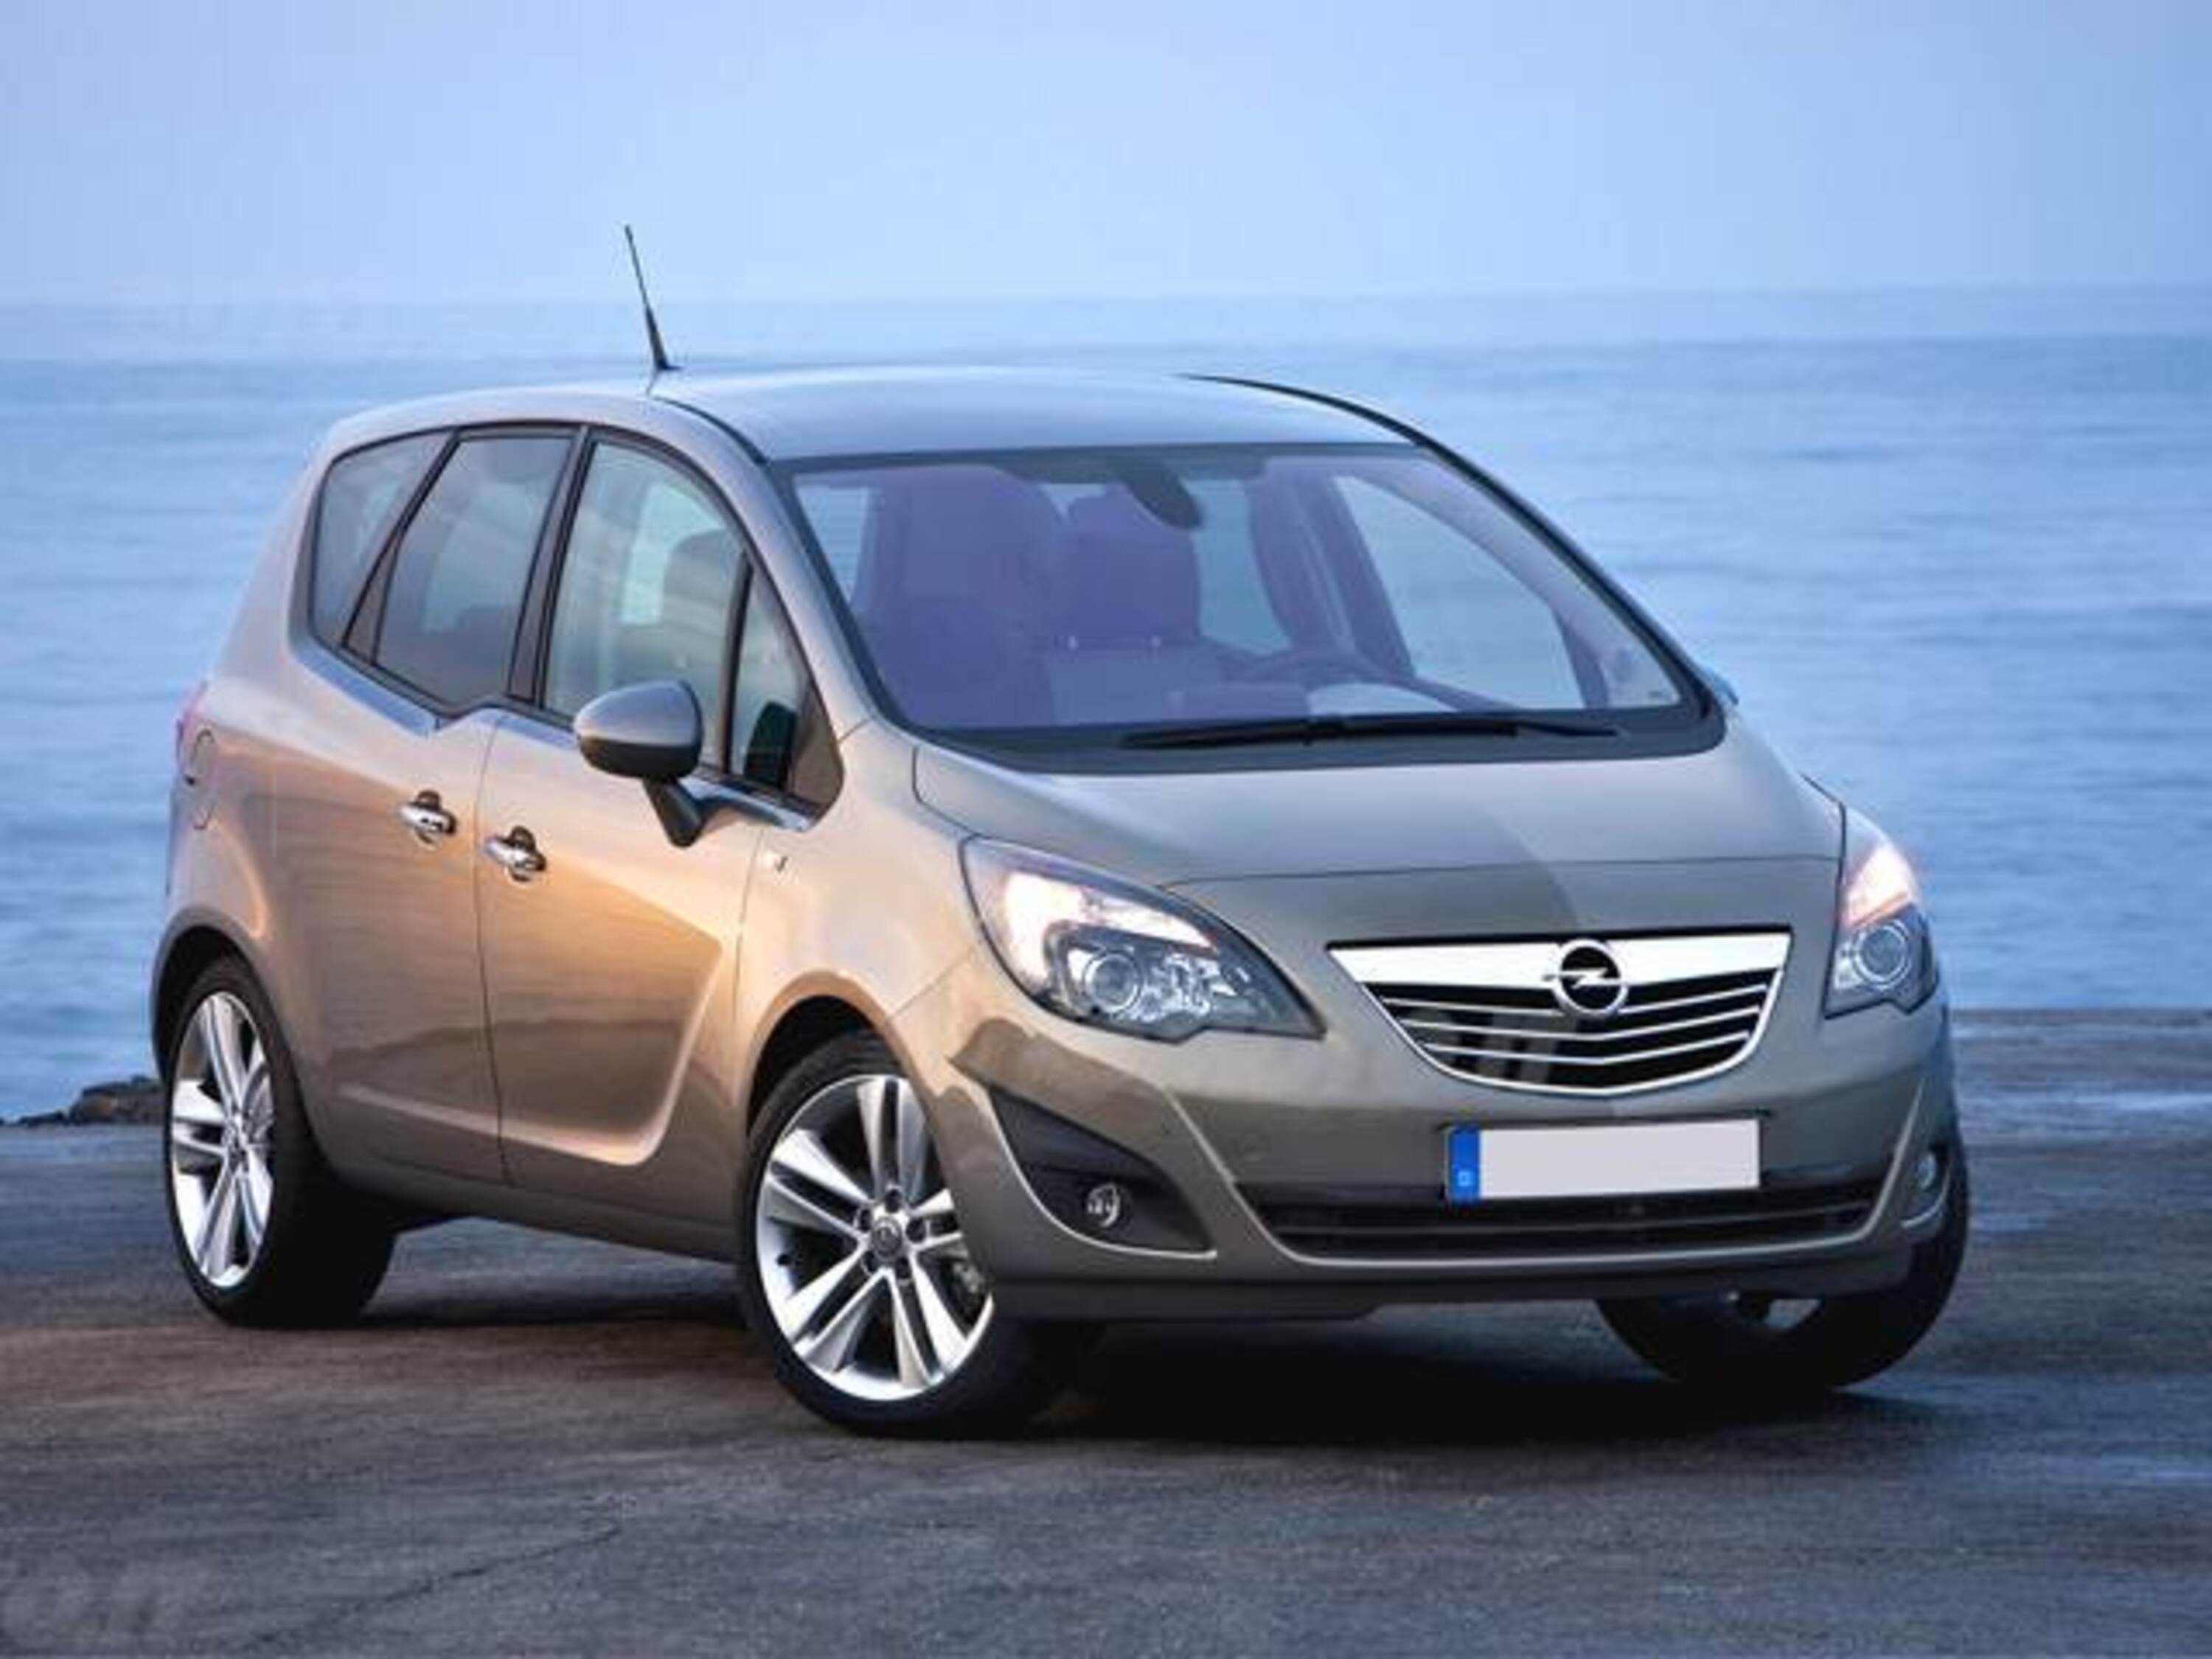 Opel Meriva 1.7 CDTI 110CV aut. b-color Panoramic